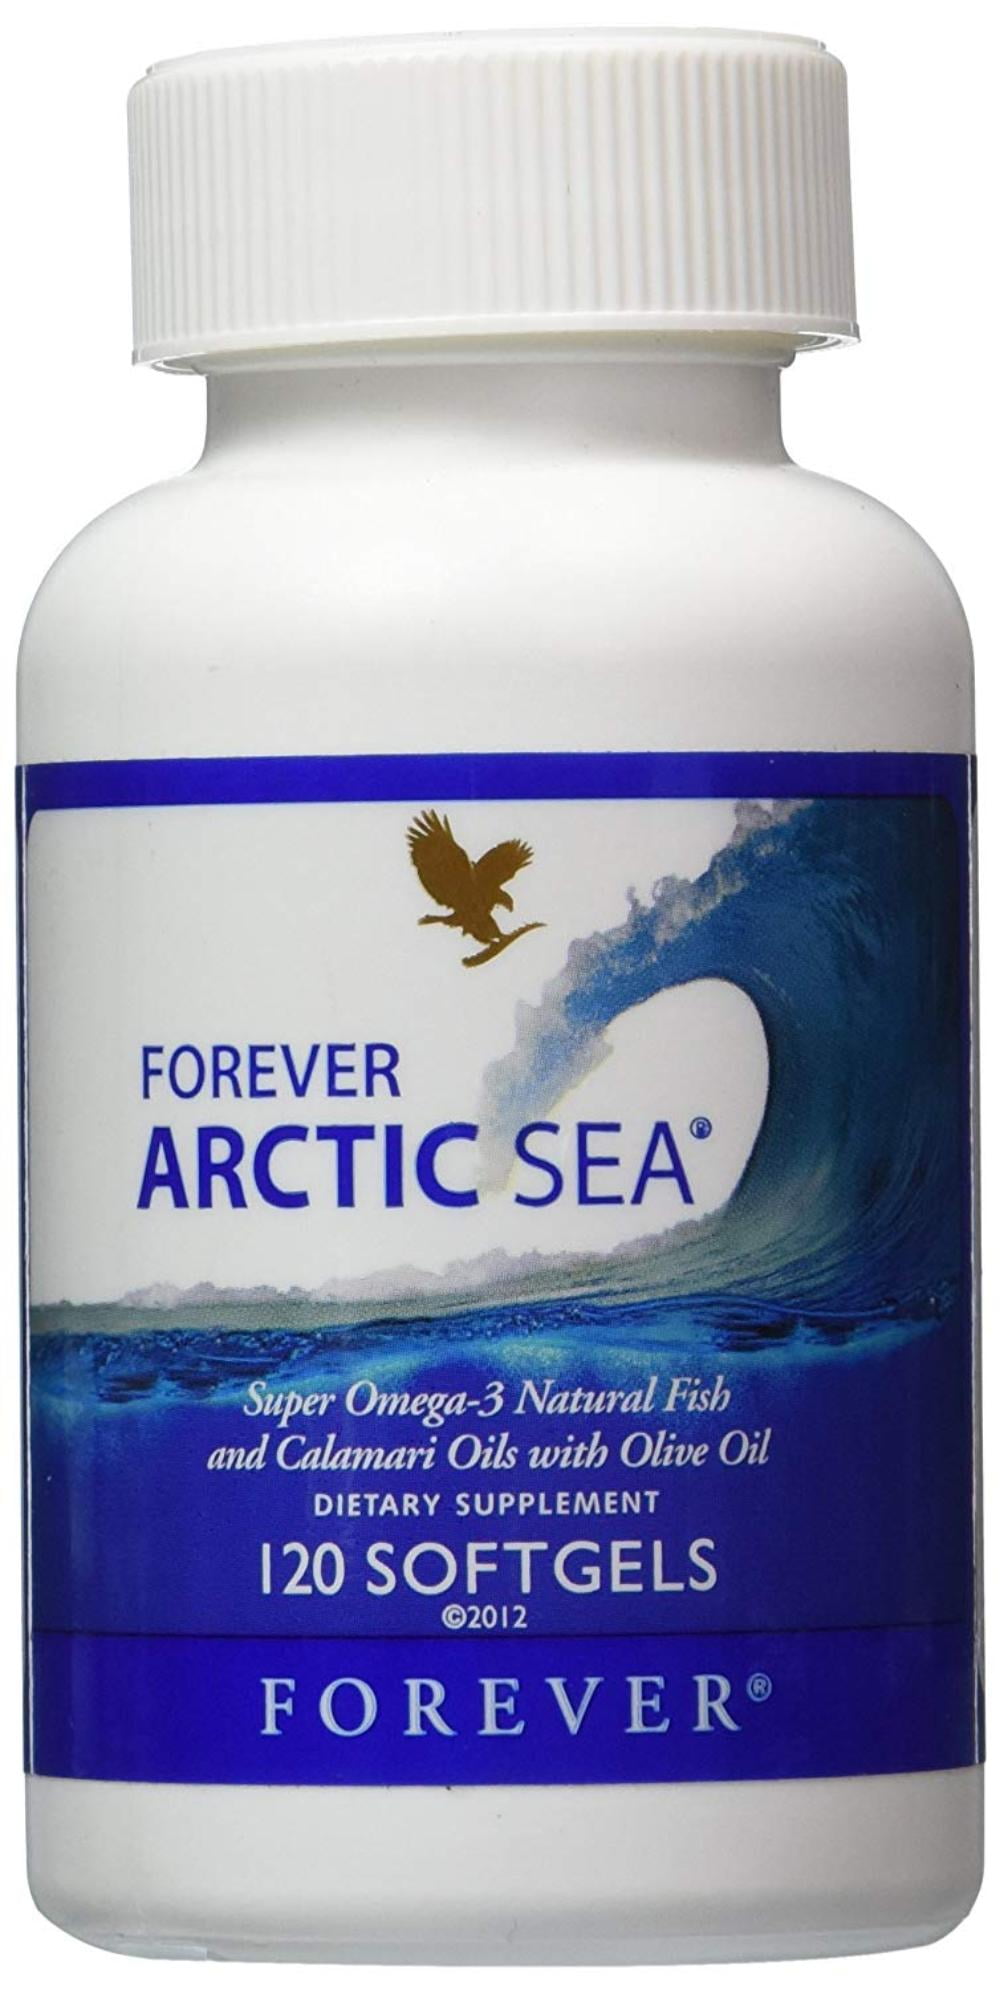 Forever Arctic-Sea super omega-3 natural fish calamari ...